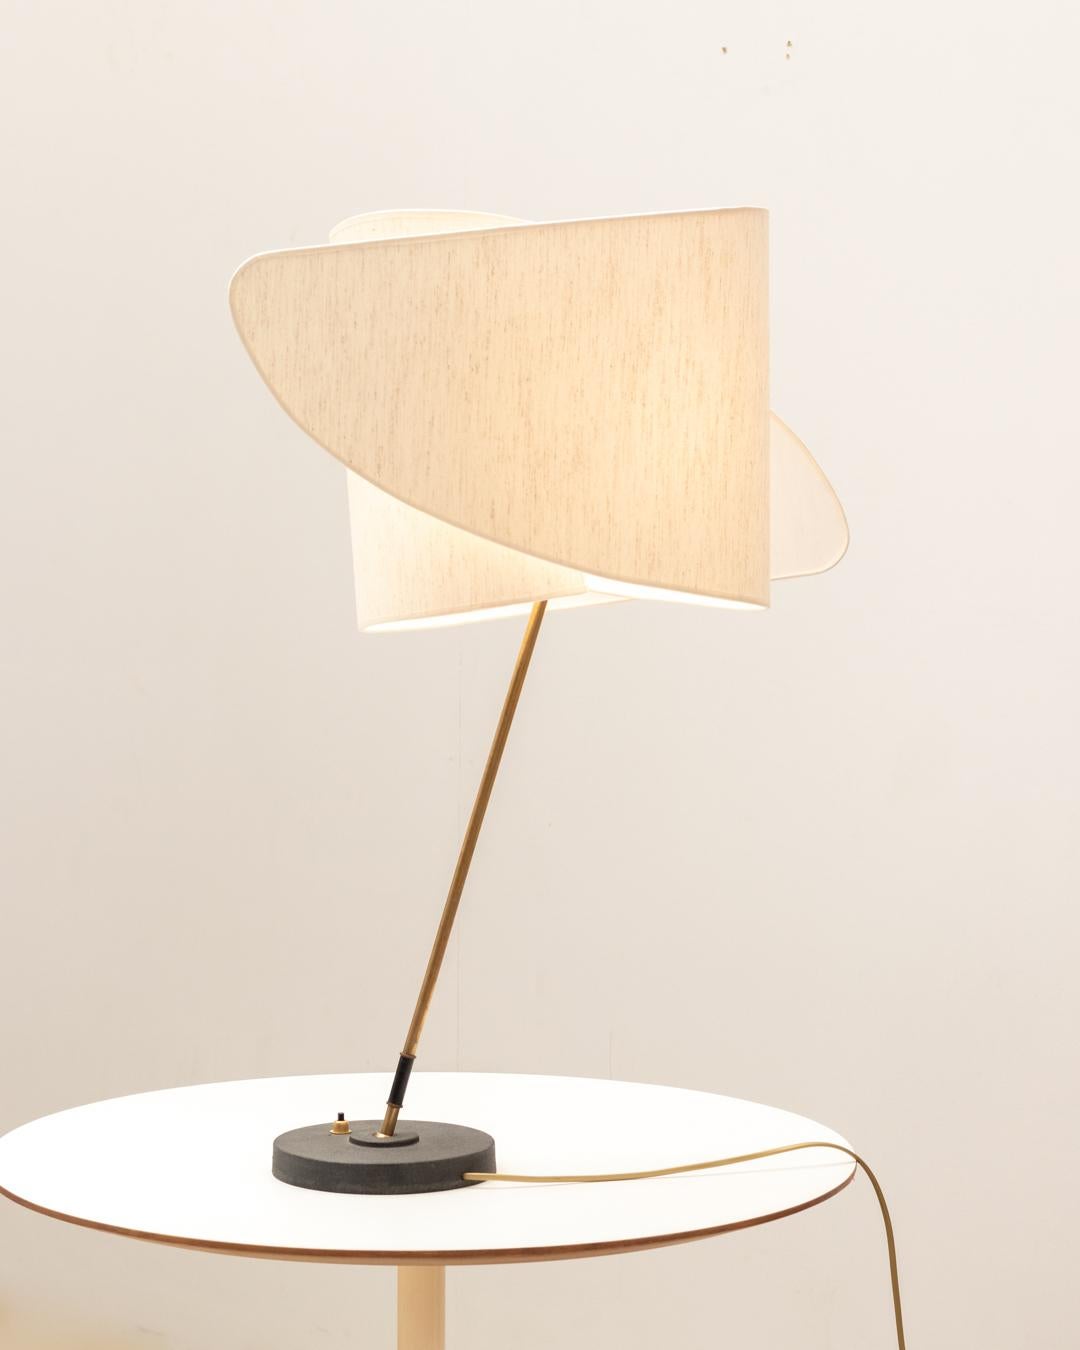 Lampe de table italienne avec un abat-jour caractéristique rappelant les créations de Carlo Mollino. L'abat-jour est soutenu par un bras rotatif en laiton et une base en métal noir.

En très bon état d'origine.

N'hésitez pas à nous contacter pour